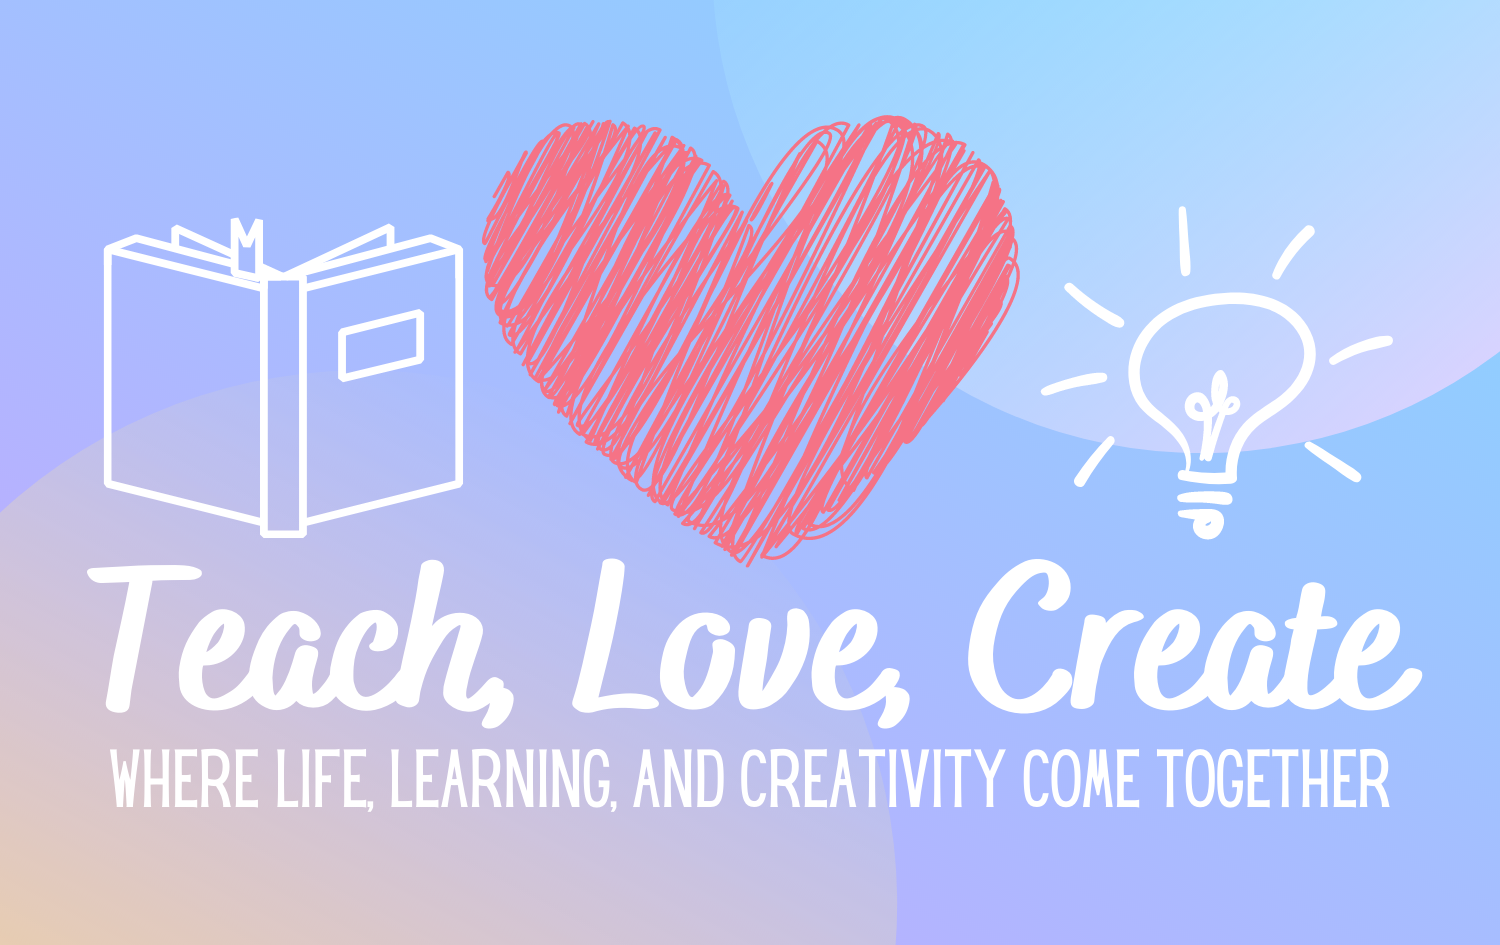 Teach, Love, Create